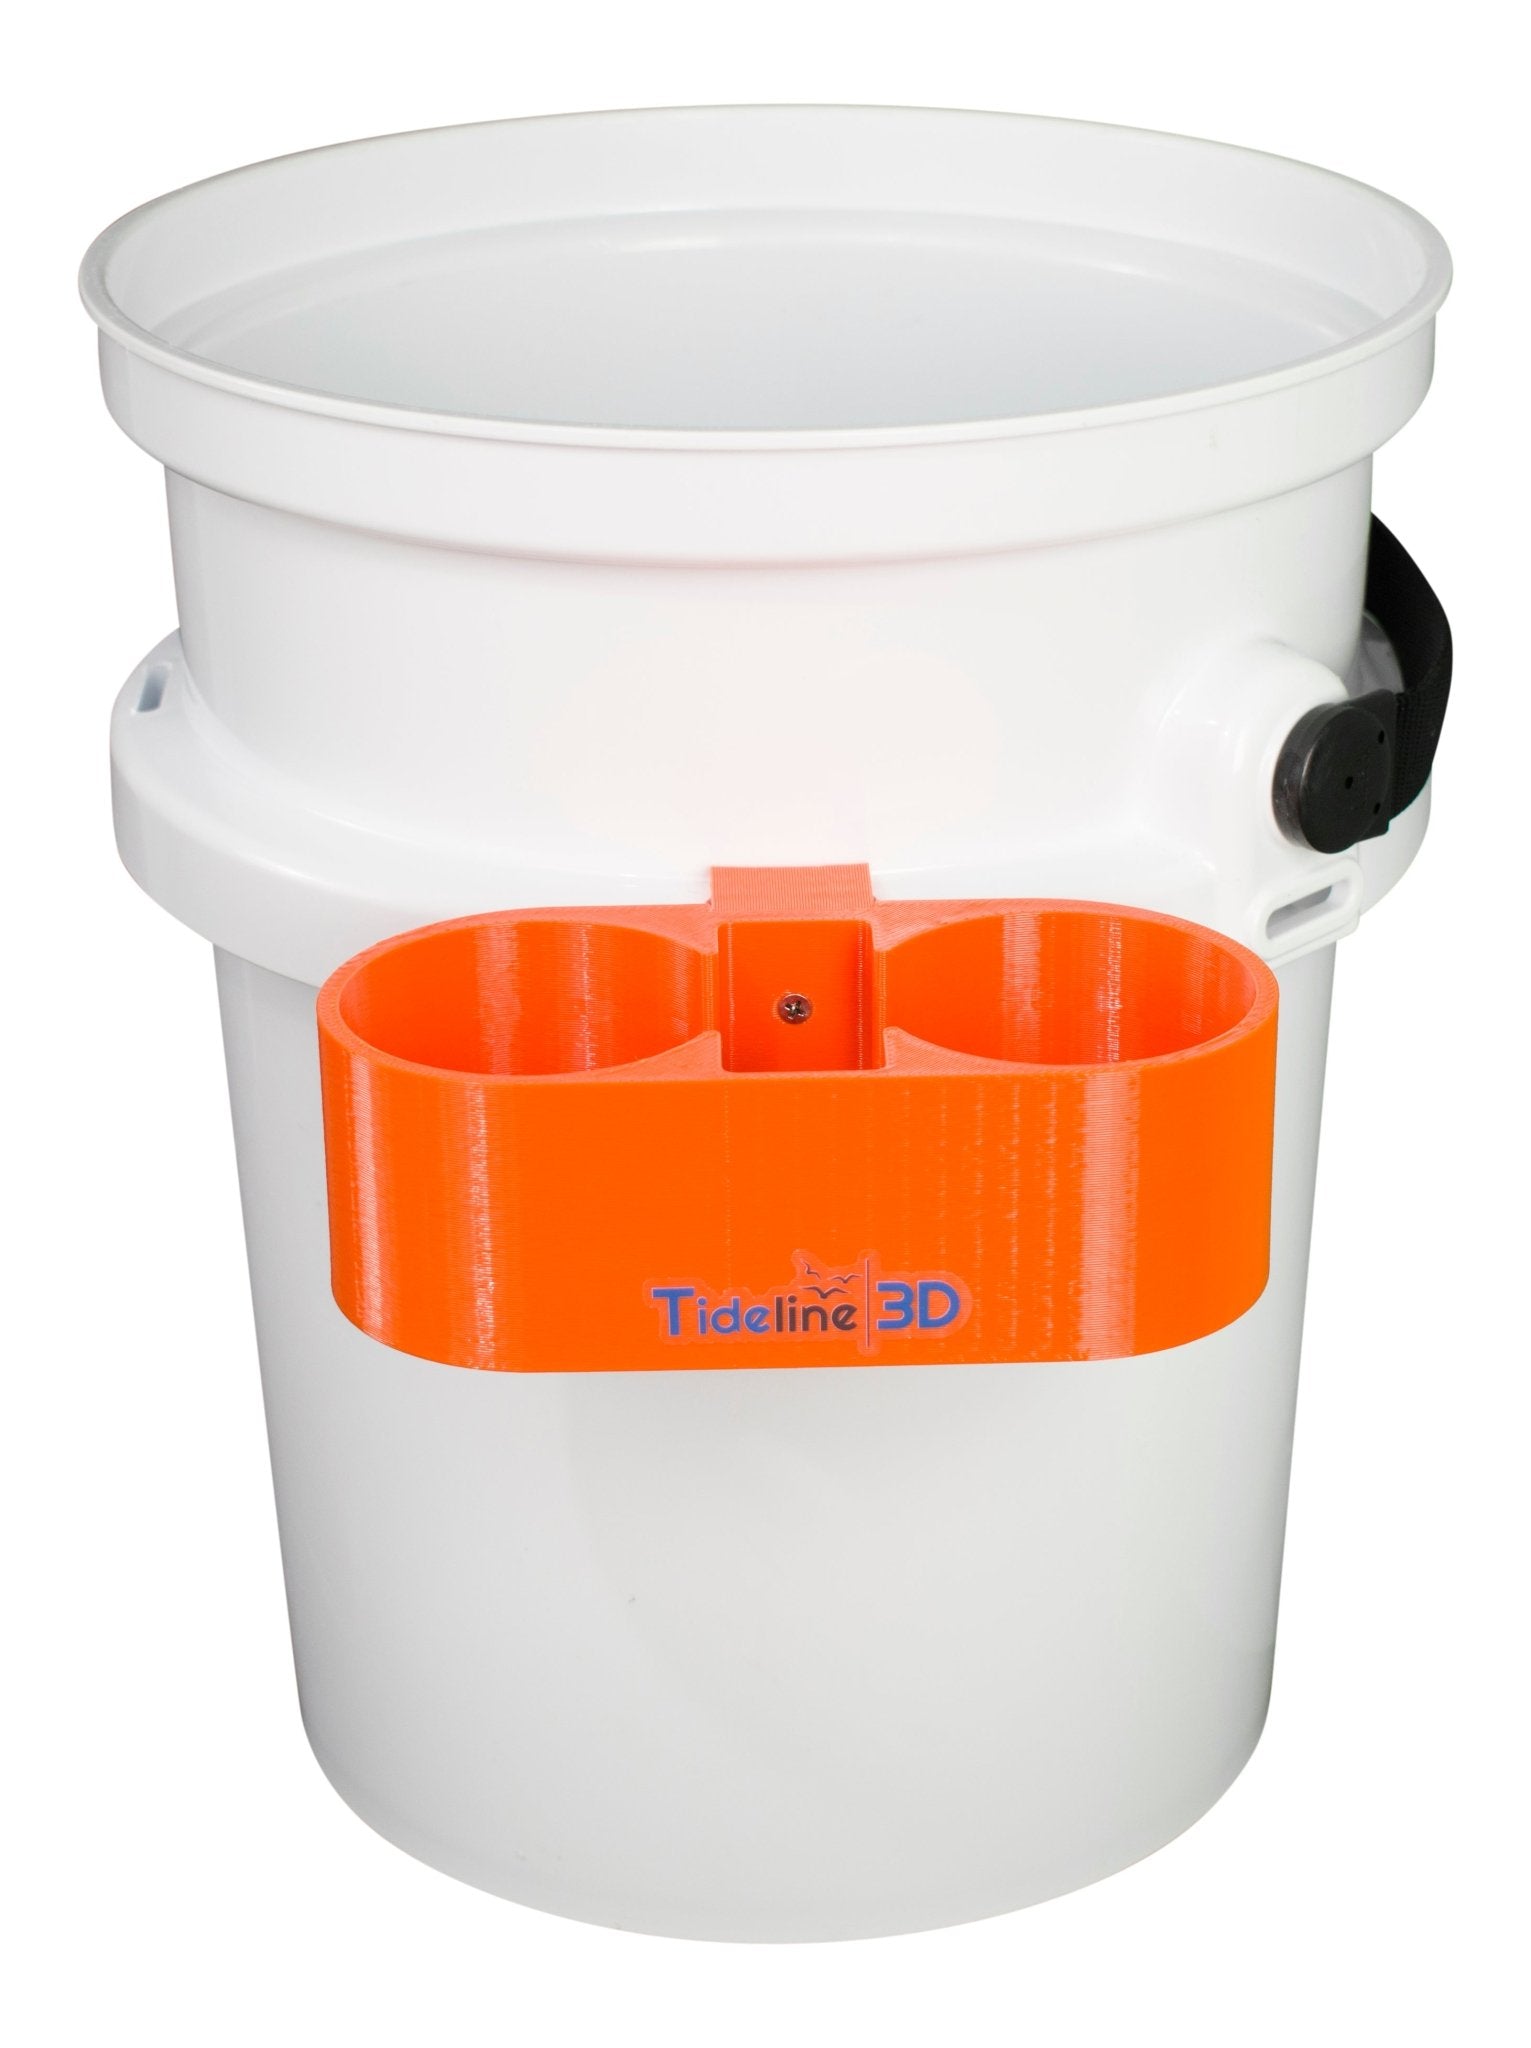 https://tideline3d.com/cdn/shop/products/tideline3d-drink-phone-holder-for-yeti-loadout-bucket-494703.jpg?v=1668221711